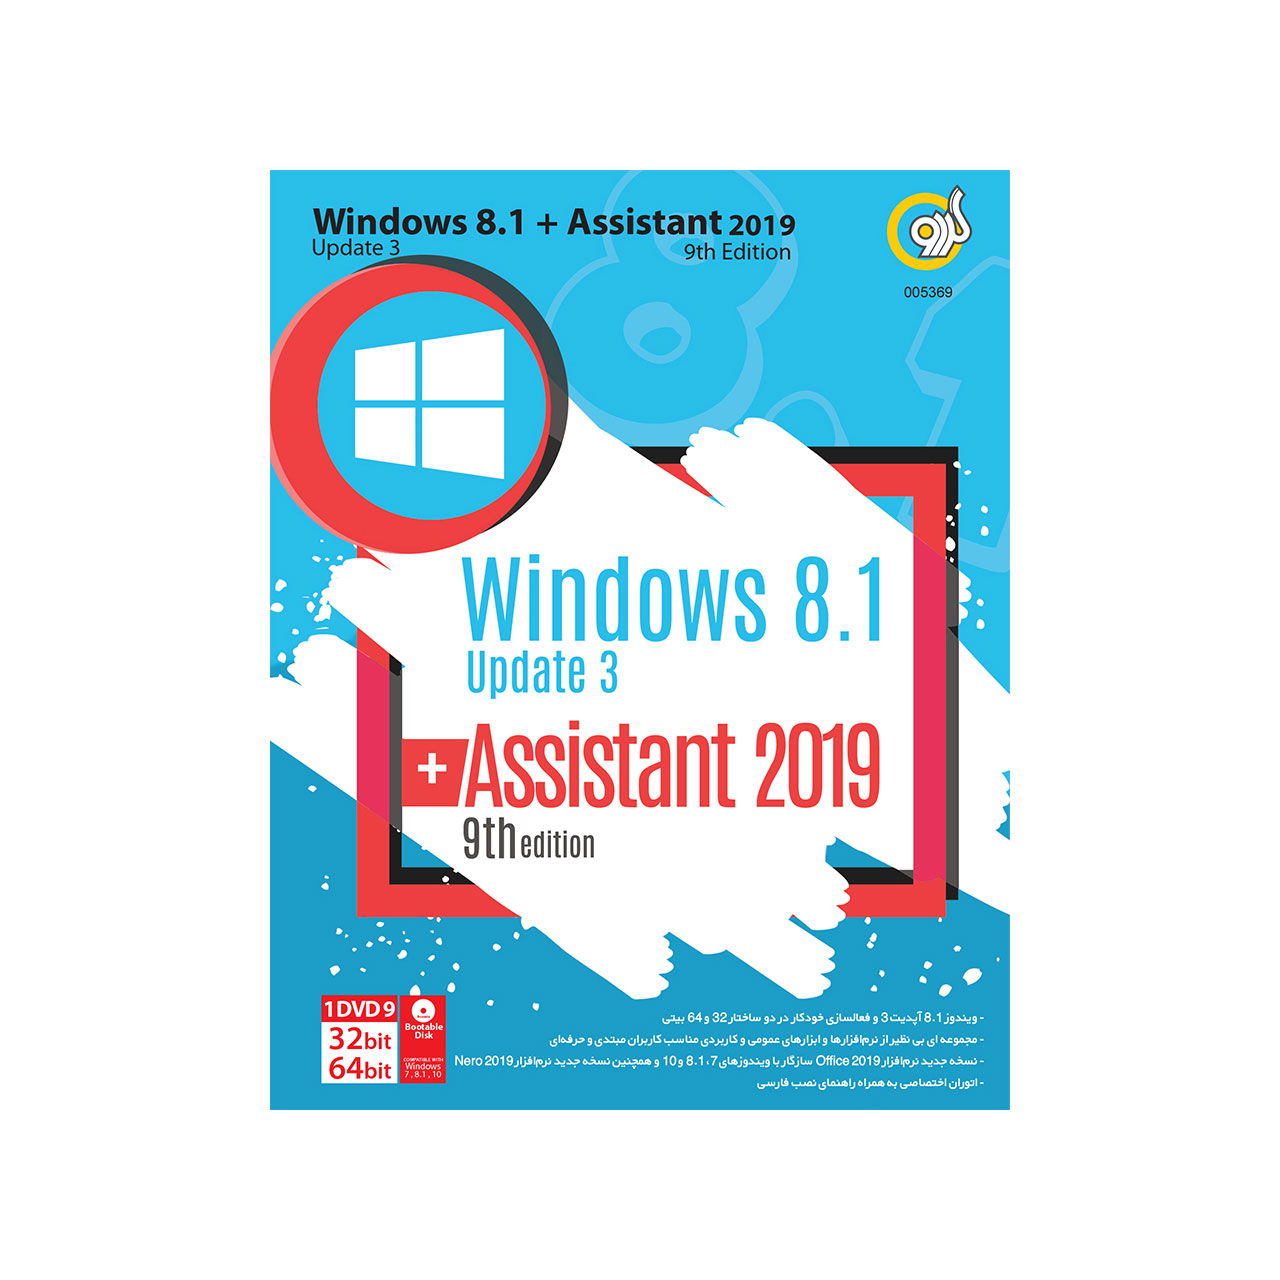 سیستم عامل ویندوز گردو Windows 8.1 Update3 + Assistant 9th Edition 2019